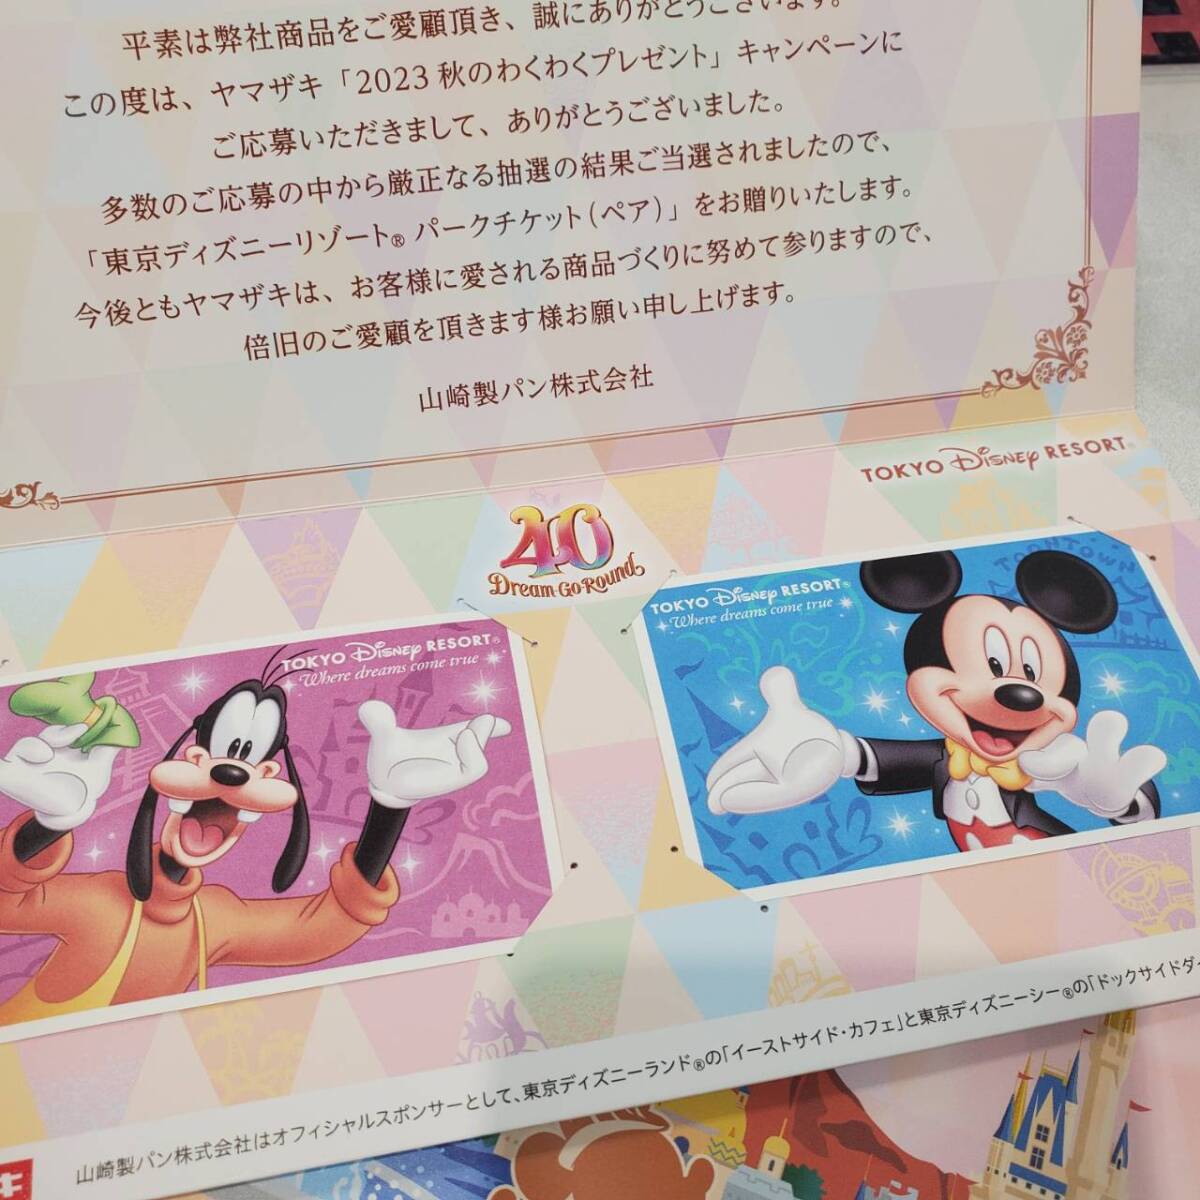 東京ディズニーリゾートスポンサーパスポート 2枚セット 有効期限2024/11/30 送料無料 即決!!_画像1